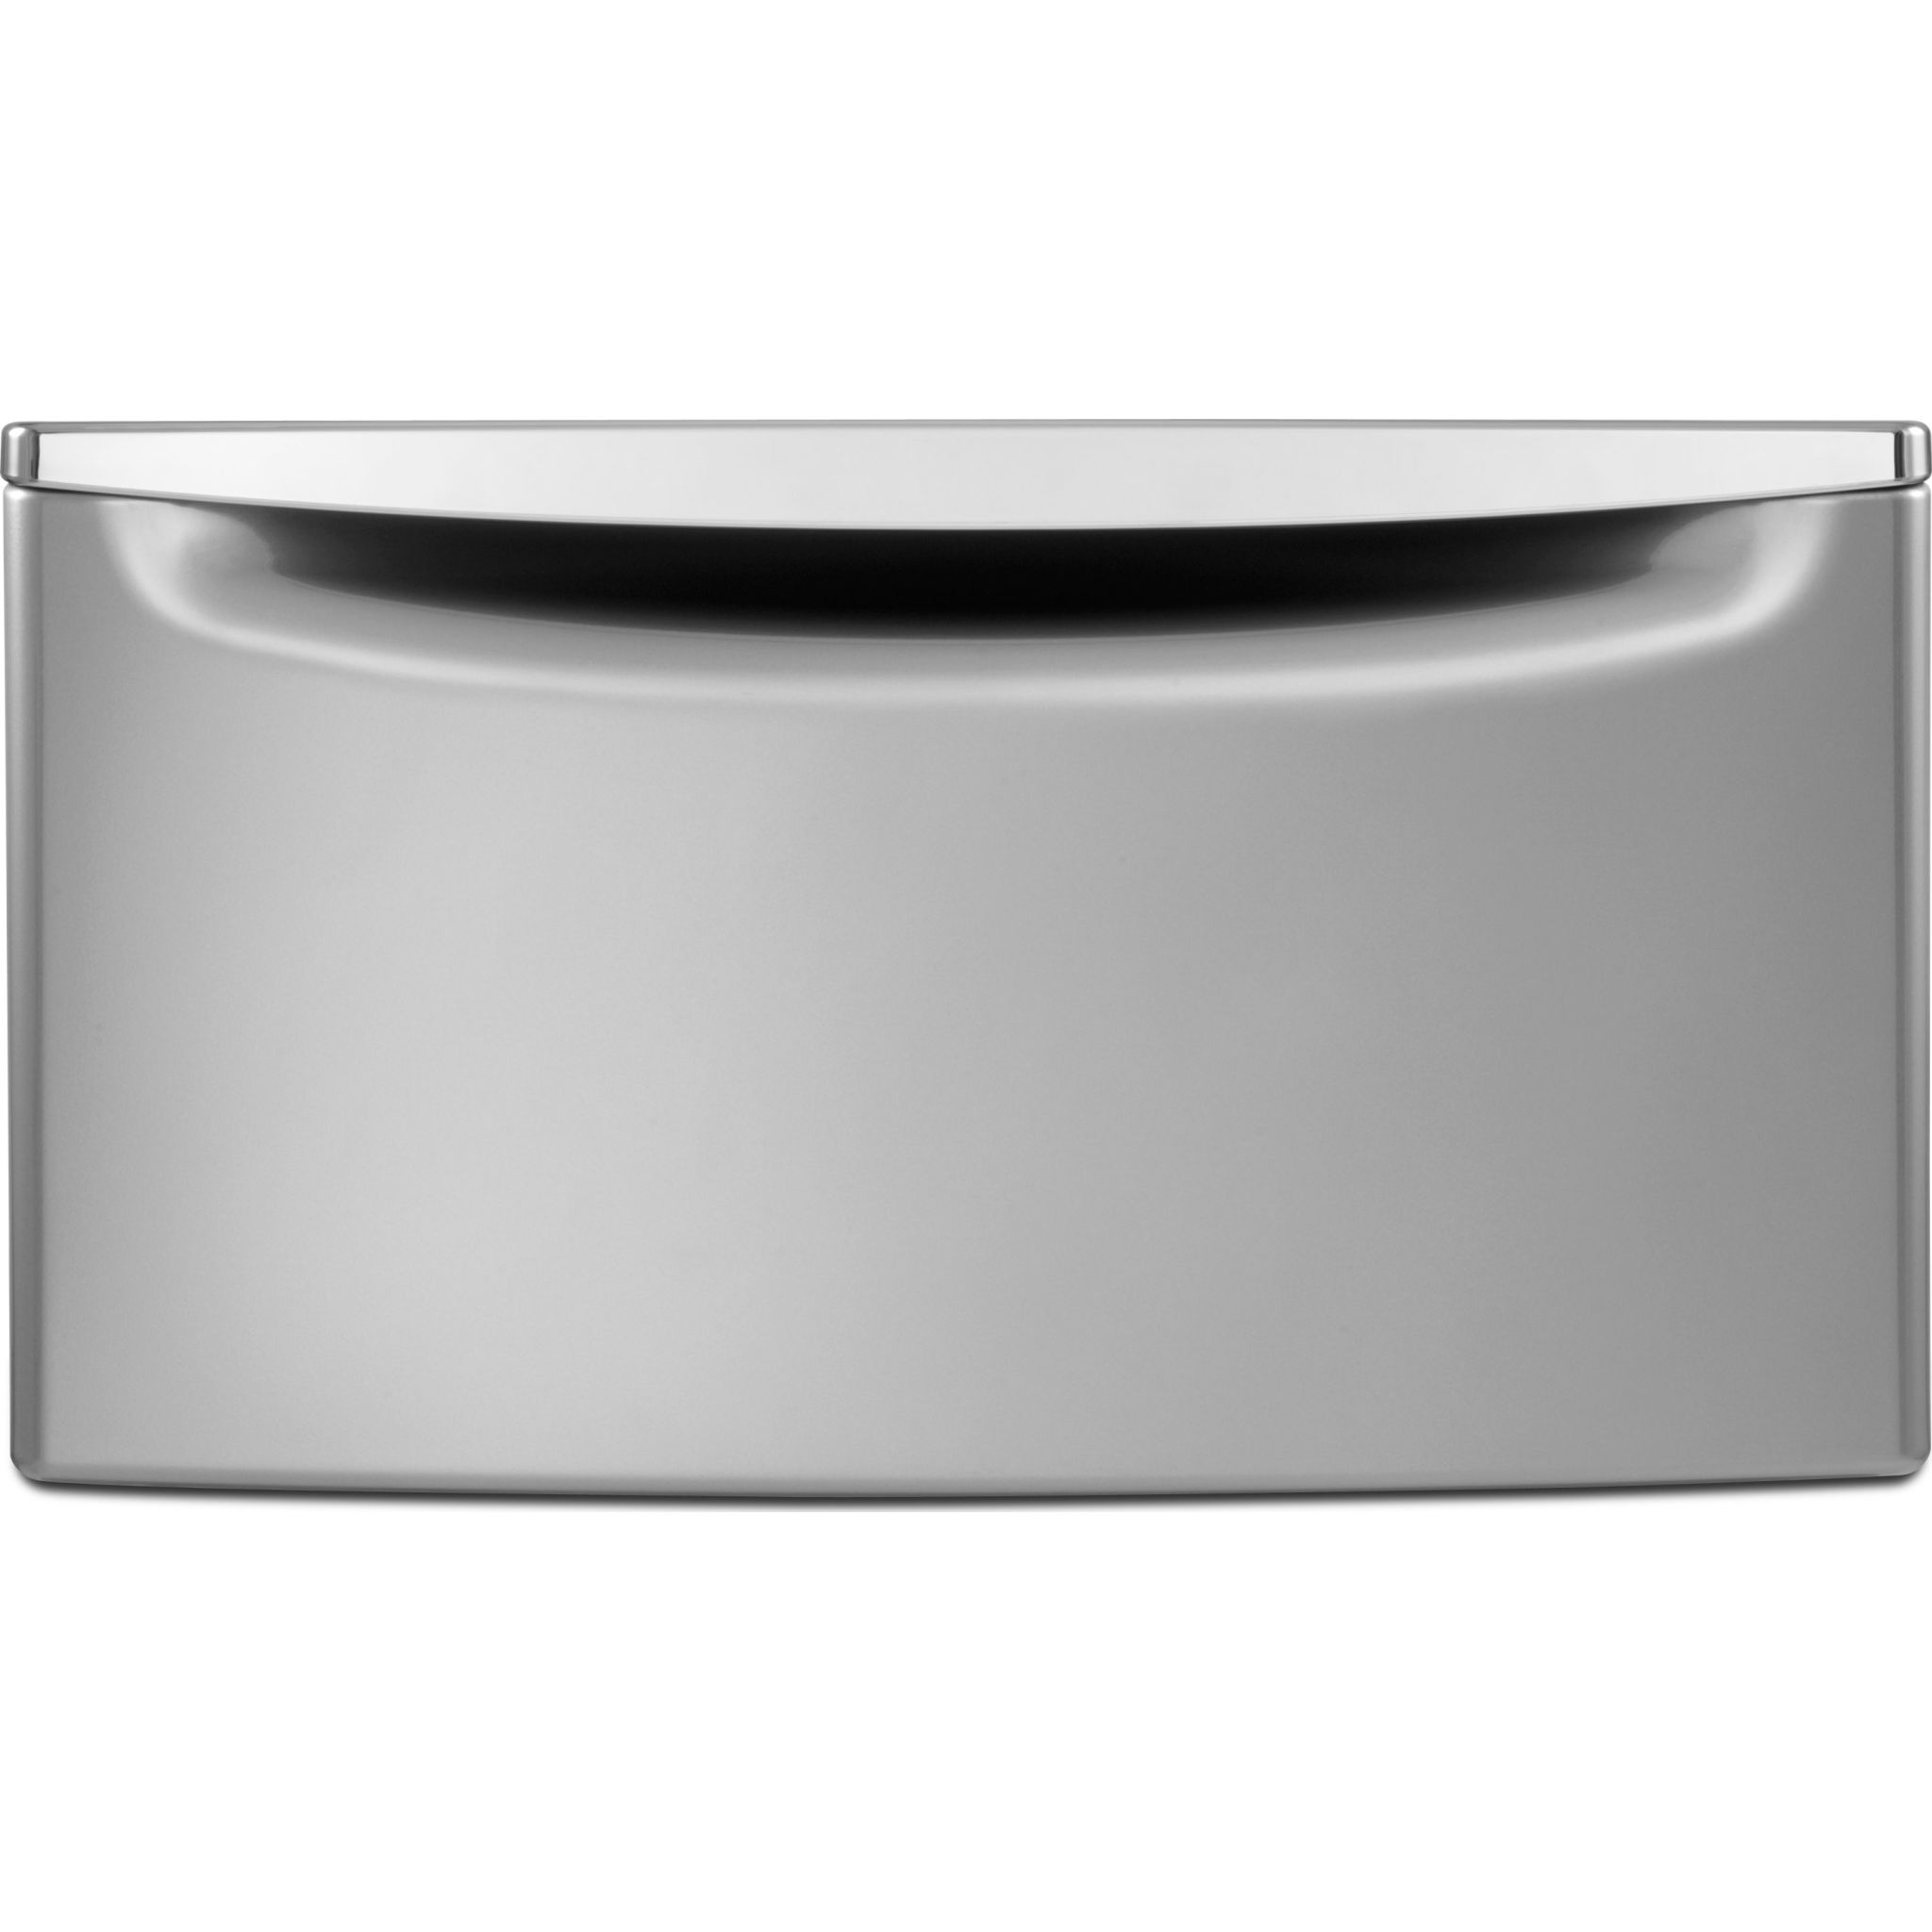 Whirlpool, Pedestal - 2.3 Cu. Ft. Storage Drawer With Chrome (XHPC155YC)